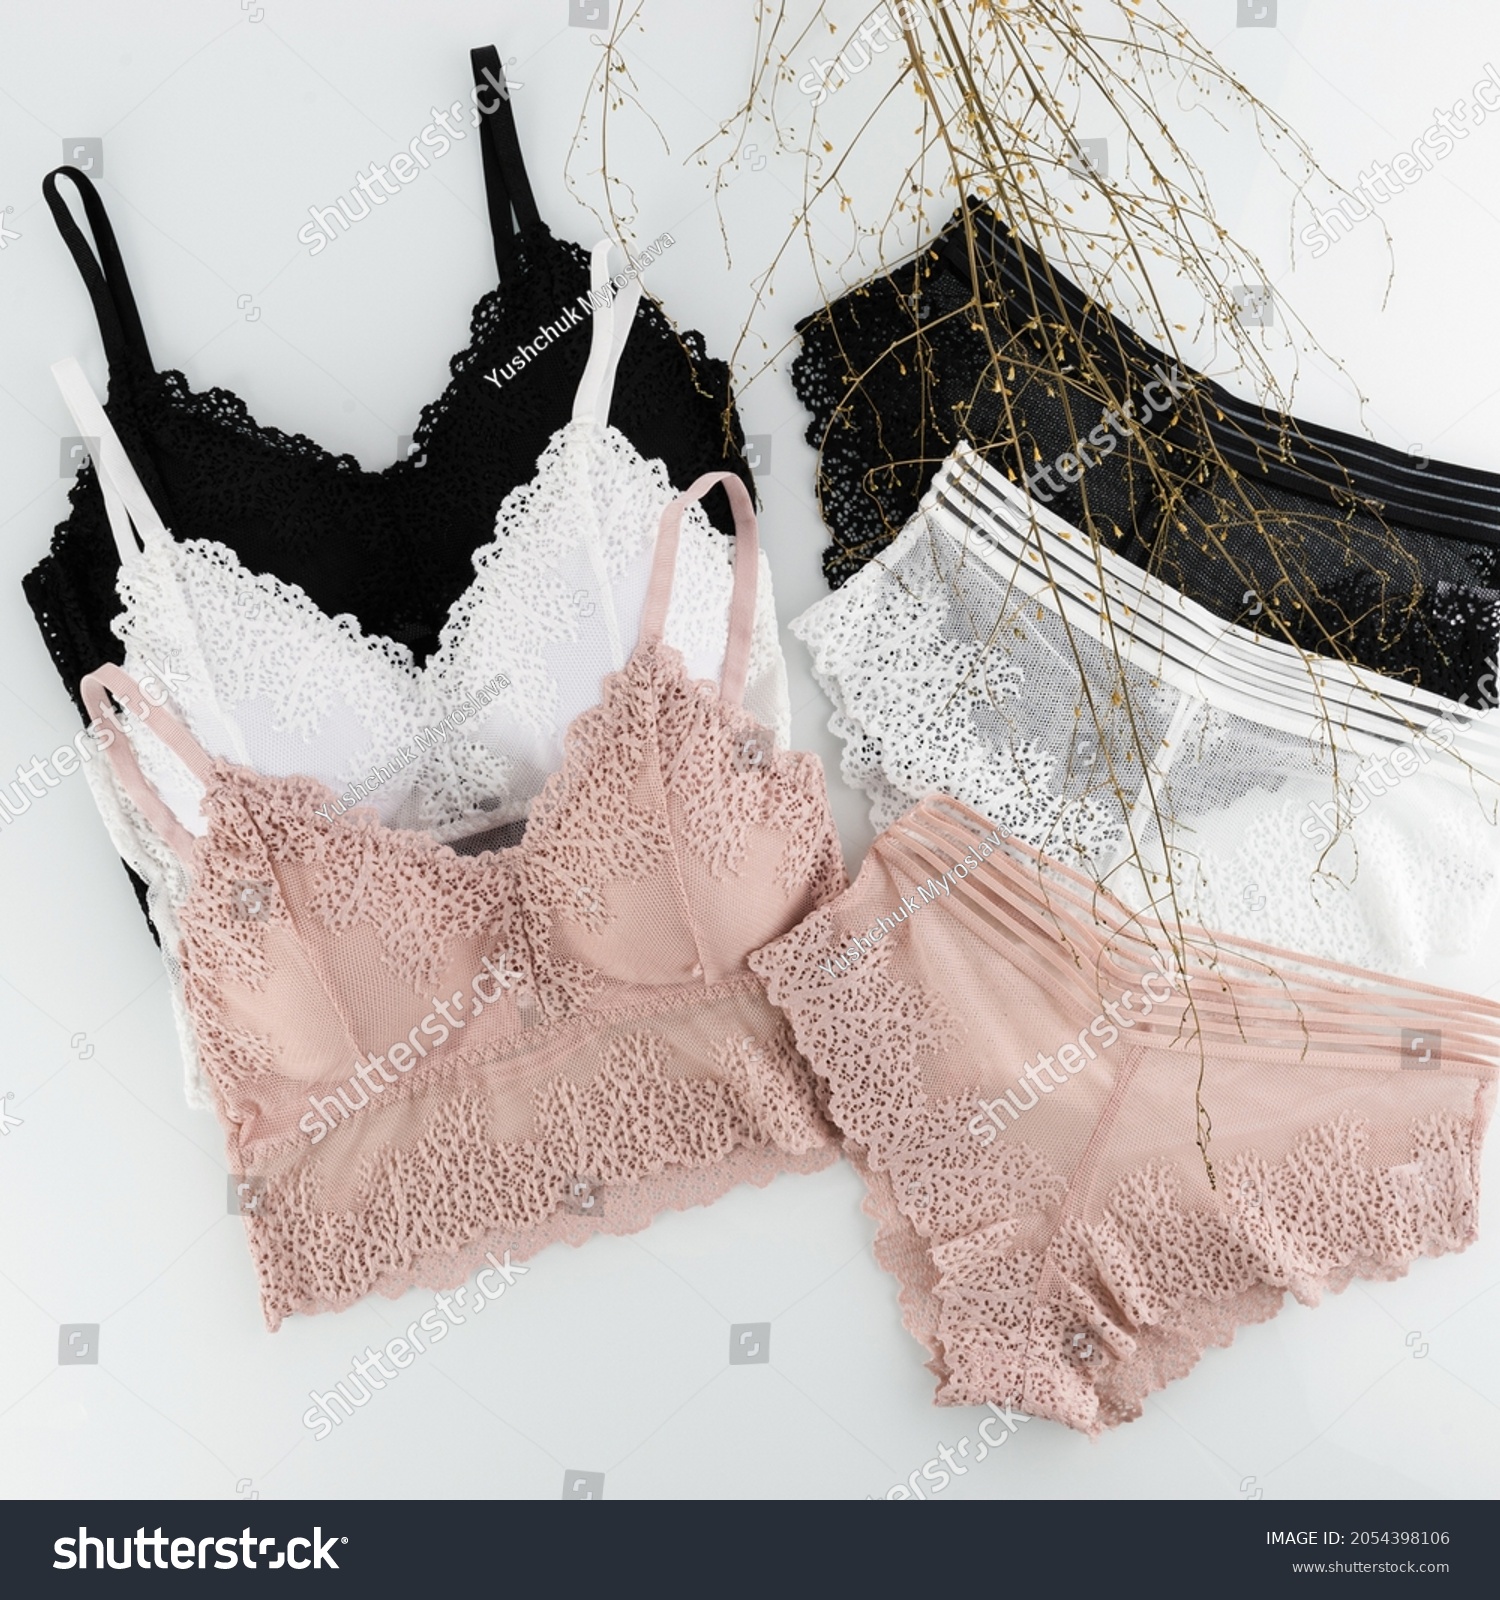 women's underwear, bra, underpants, white, black, beige fishnet, layout on a white background #2054398106